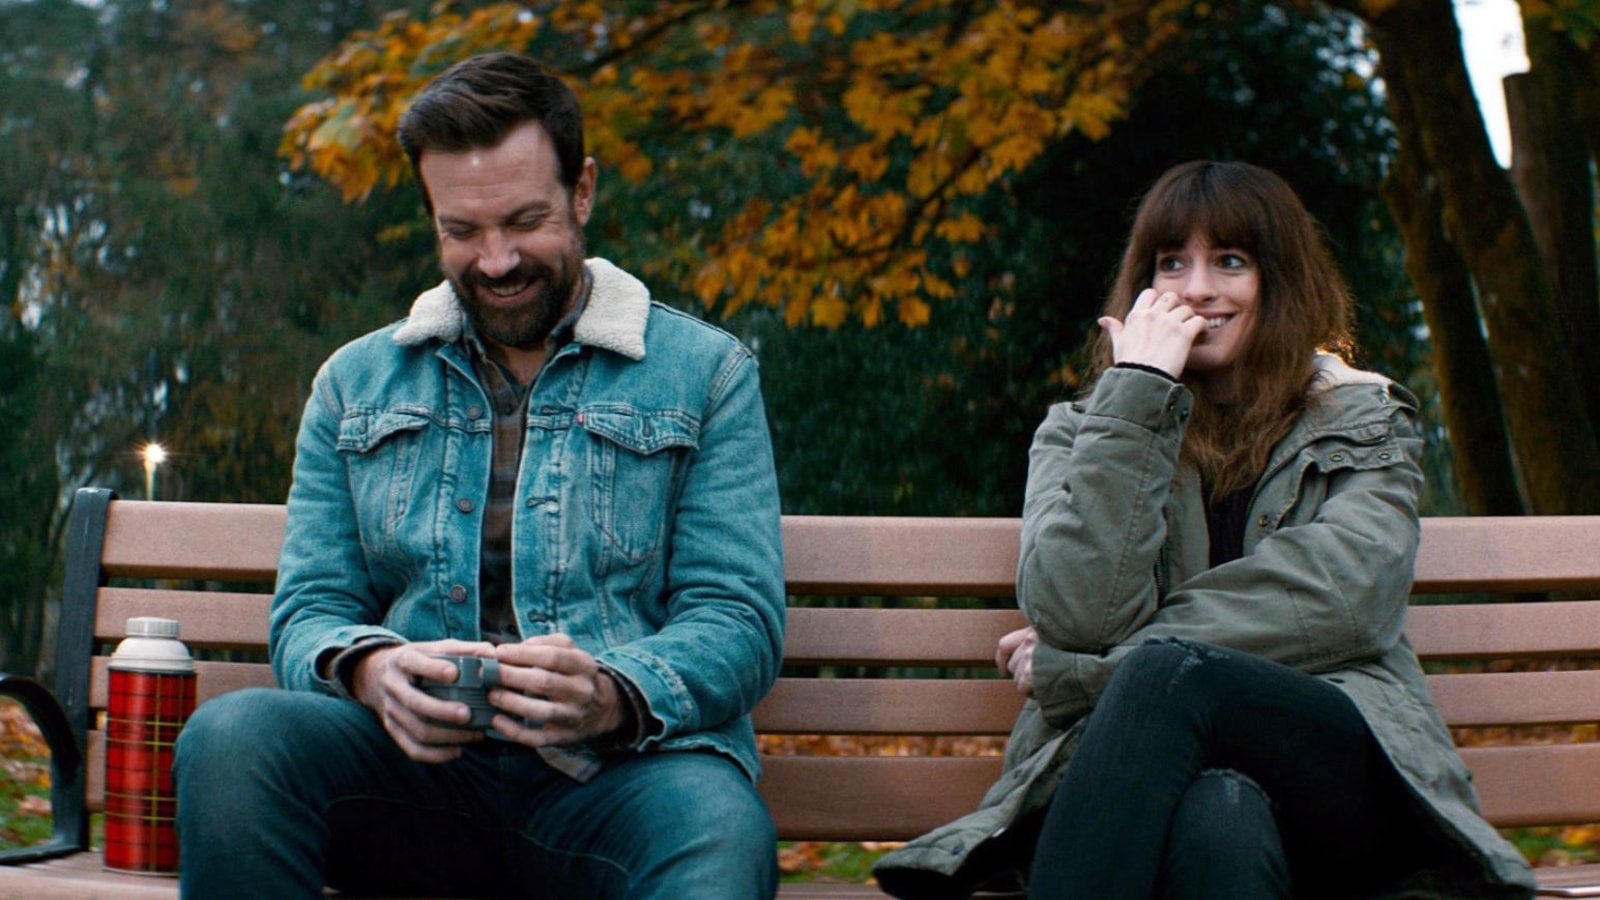 Un homme et une femme (Anne Hathaway) assis sur un banc, rient.